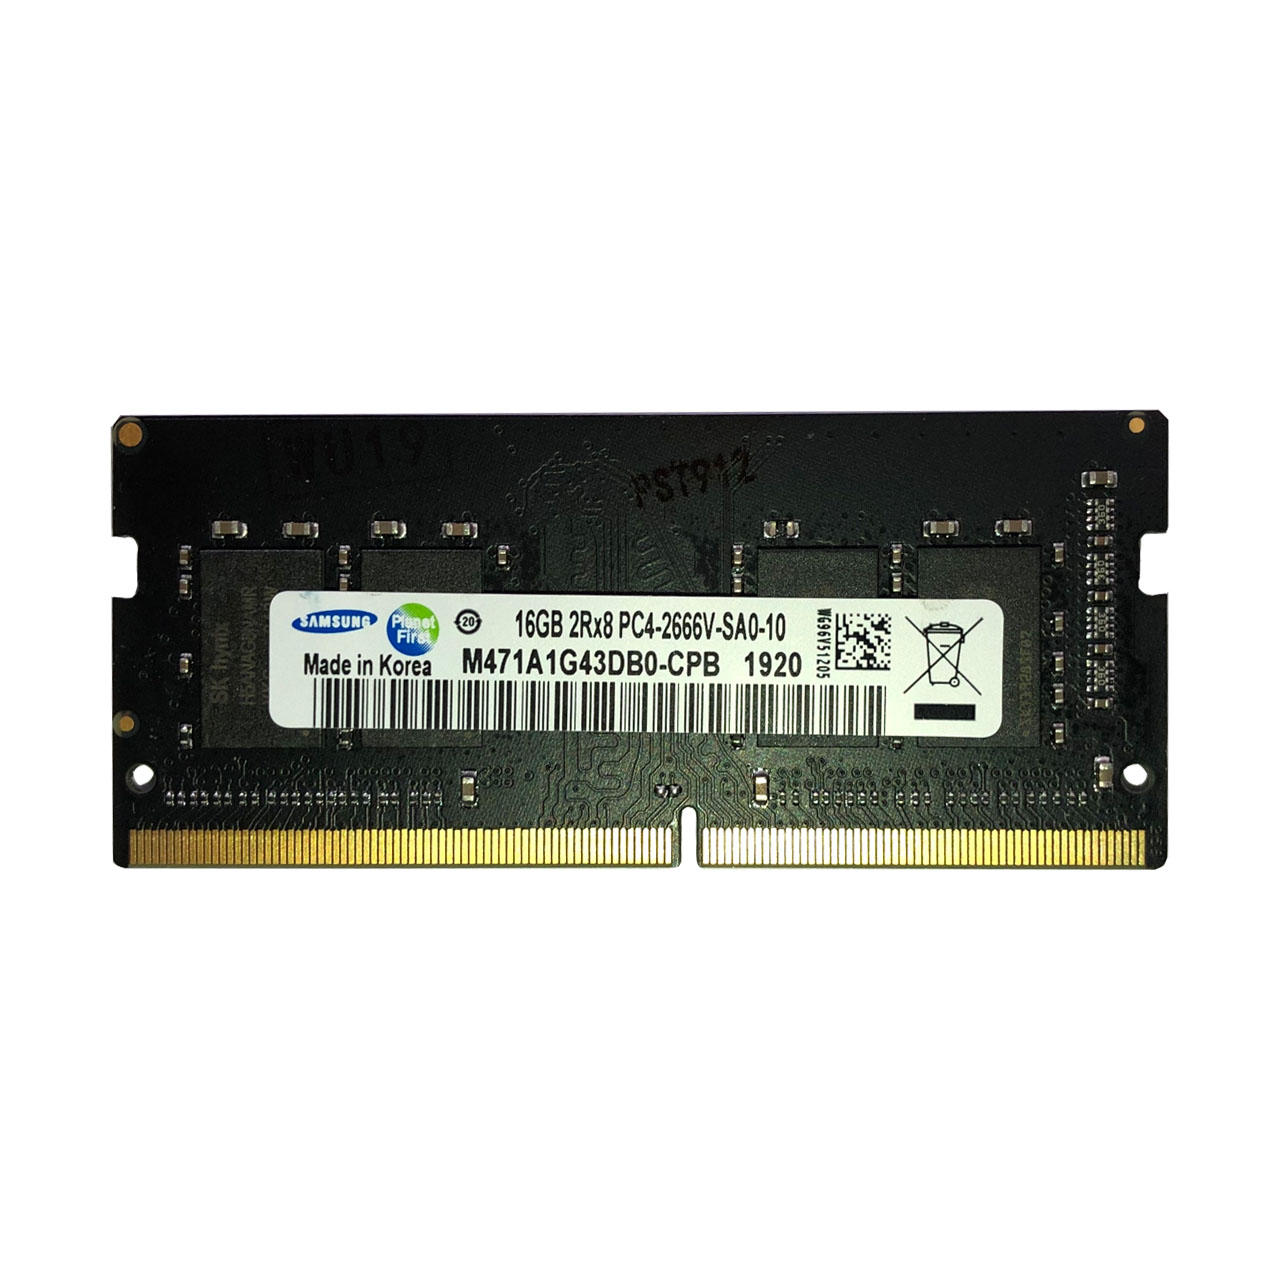 نقد و بررسی رم لپ تاپ DDR4 تک کاناله 2666 مگاهرتز CL15 سامسونگ مدل PC4 ظرفیت 16 گیگابایت توسط خریداران